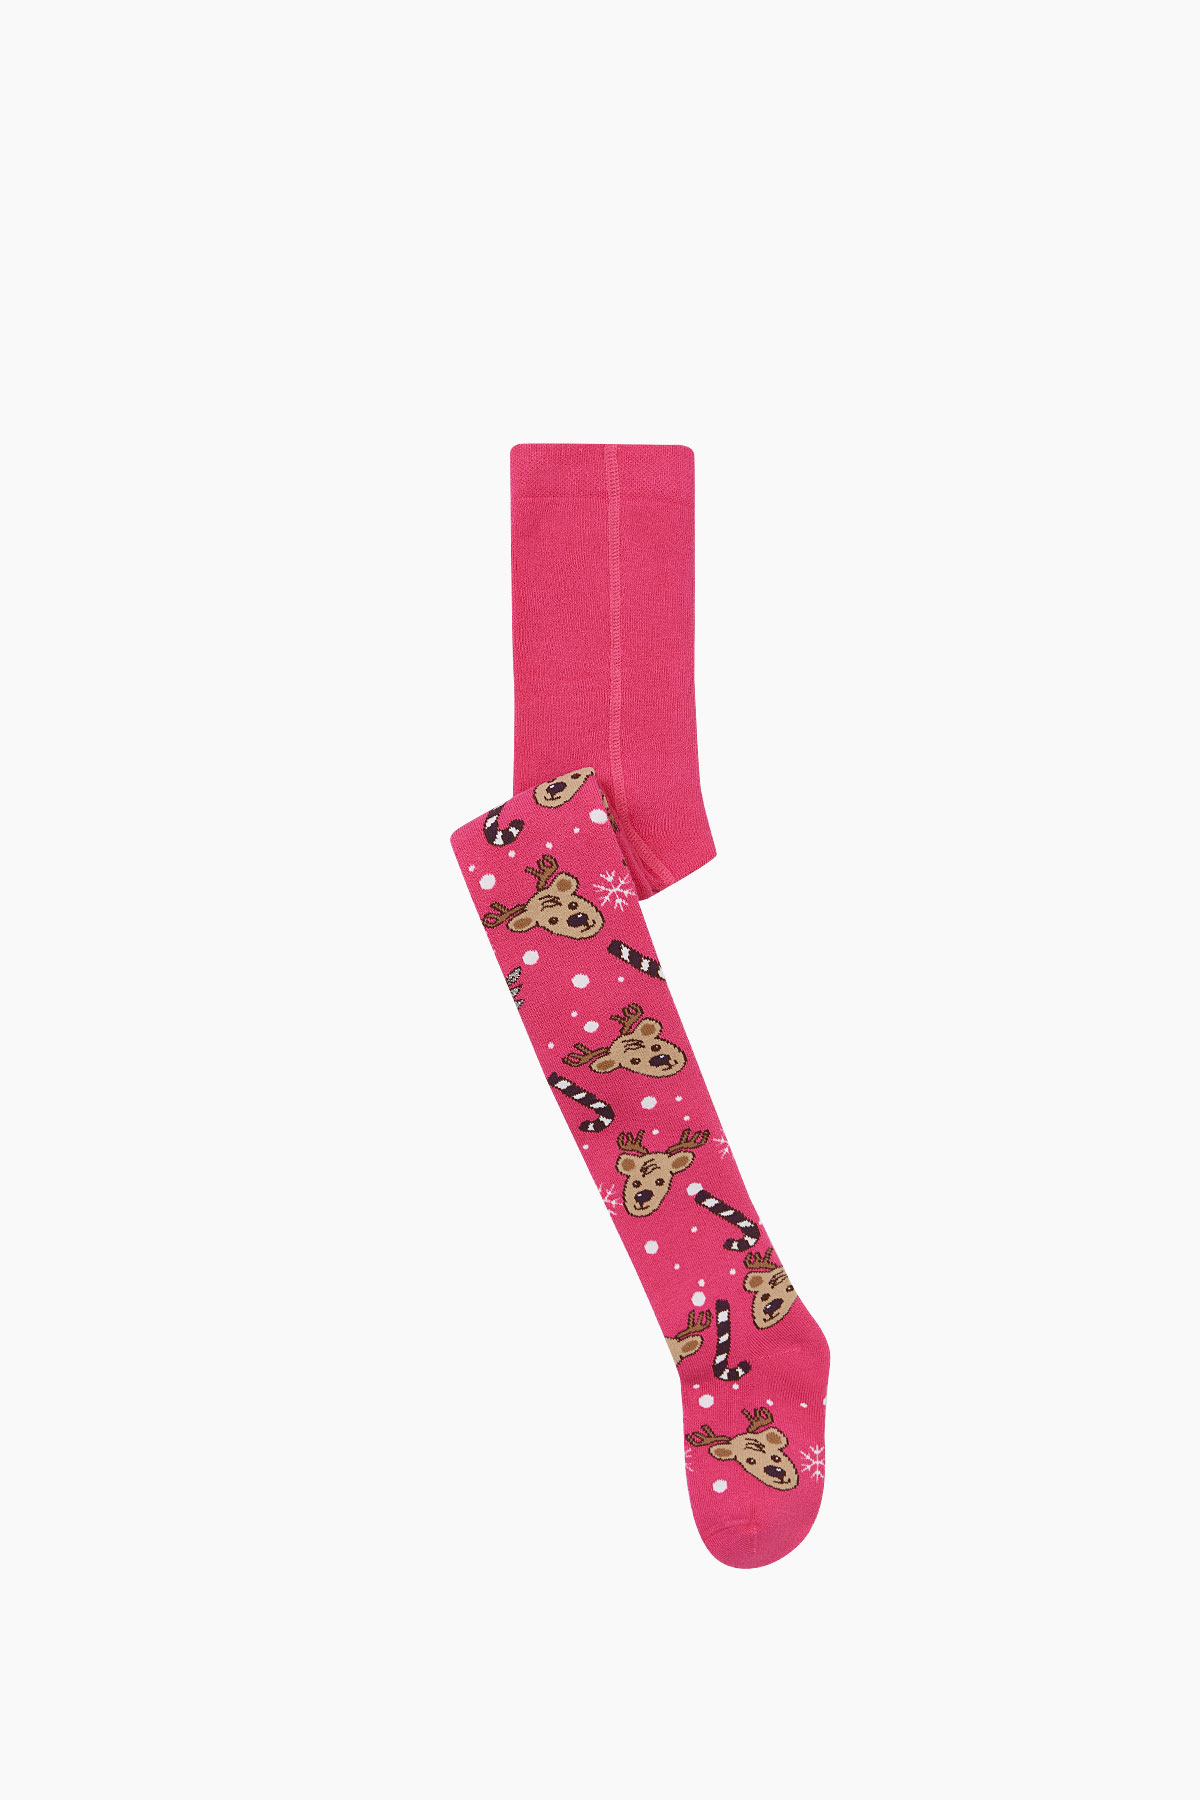 Bross - Bross Yılbaşı Geyik Desenli Havlu Külotlu Çocuk Çorabı